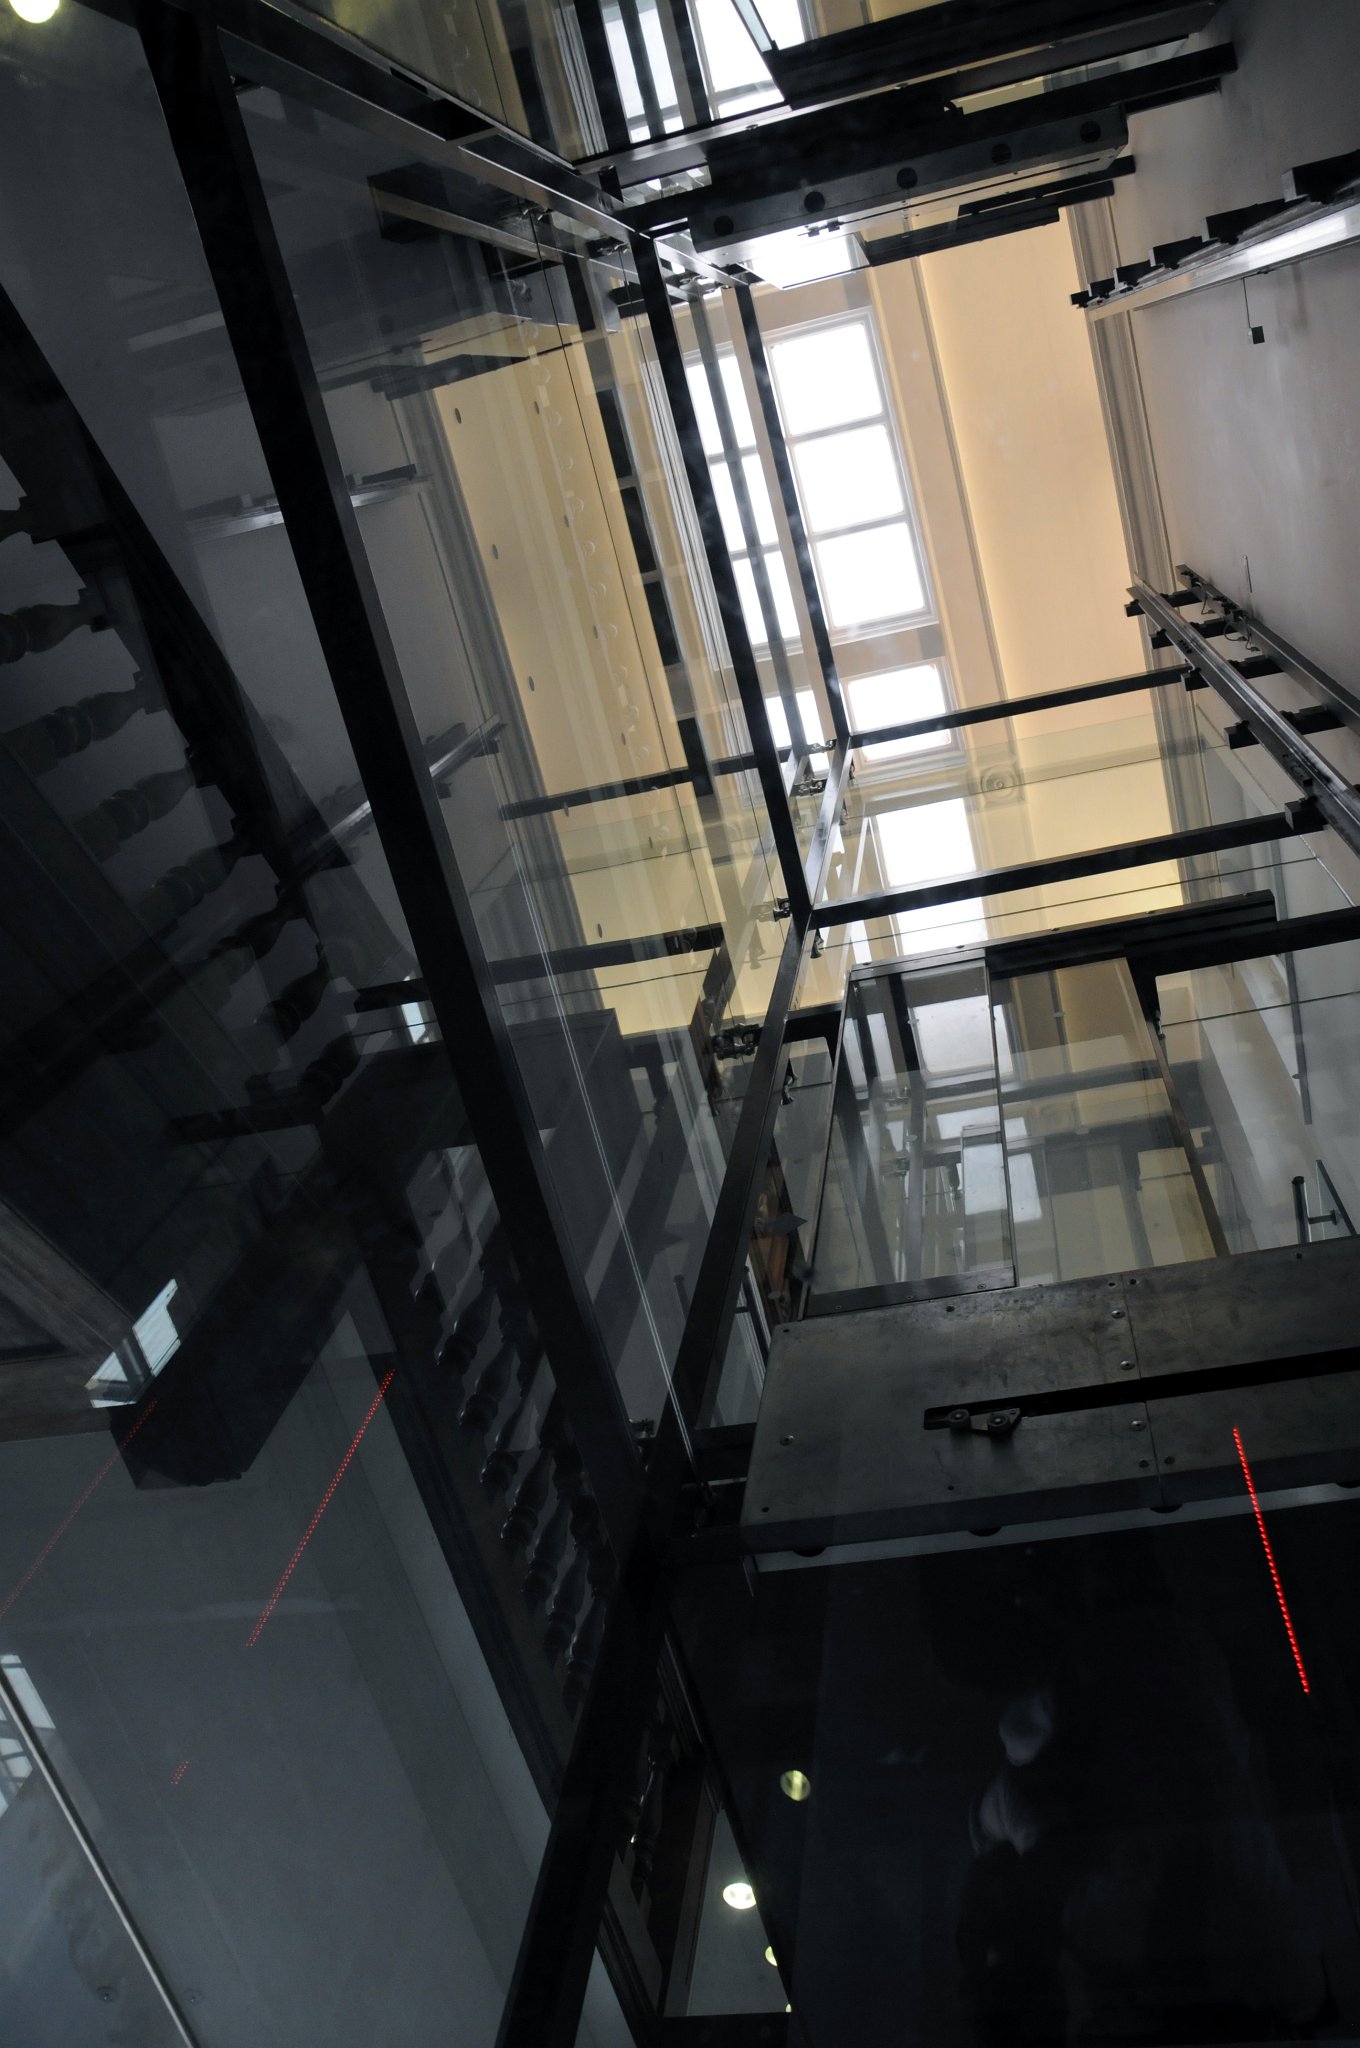 DSC_4257_1.jpg - Průhled stropem celoskleněného výtahu v muzeu.